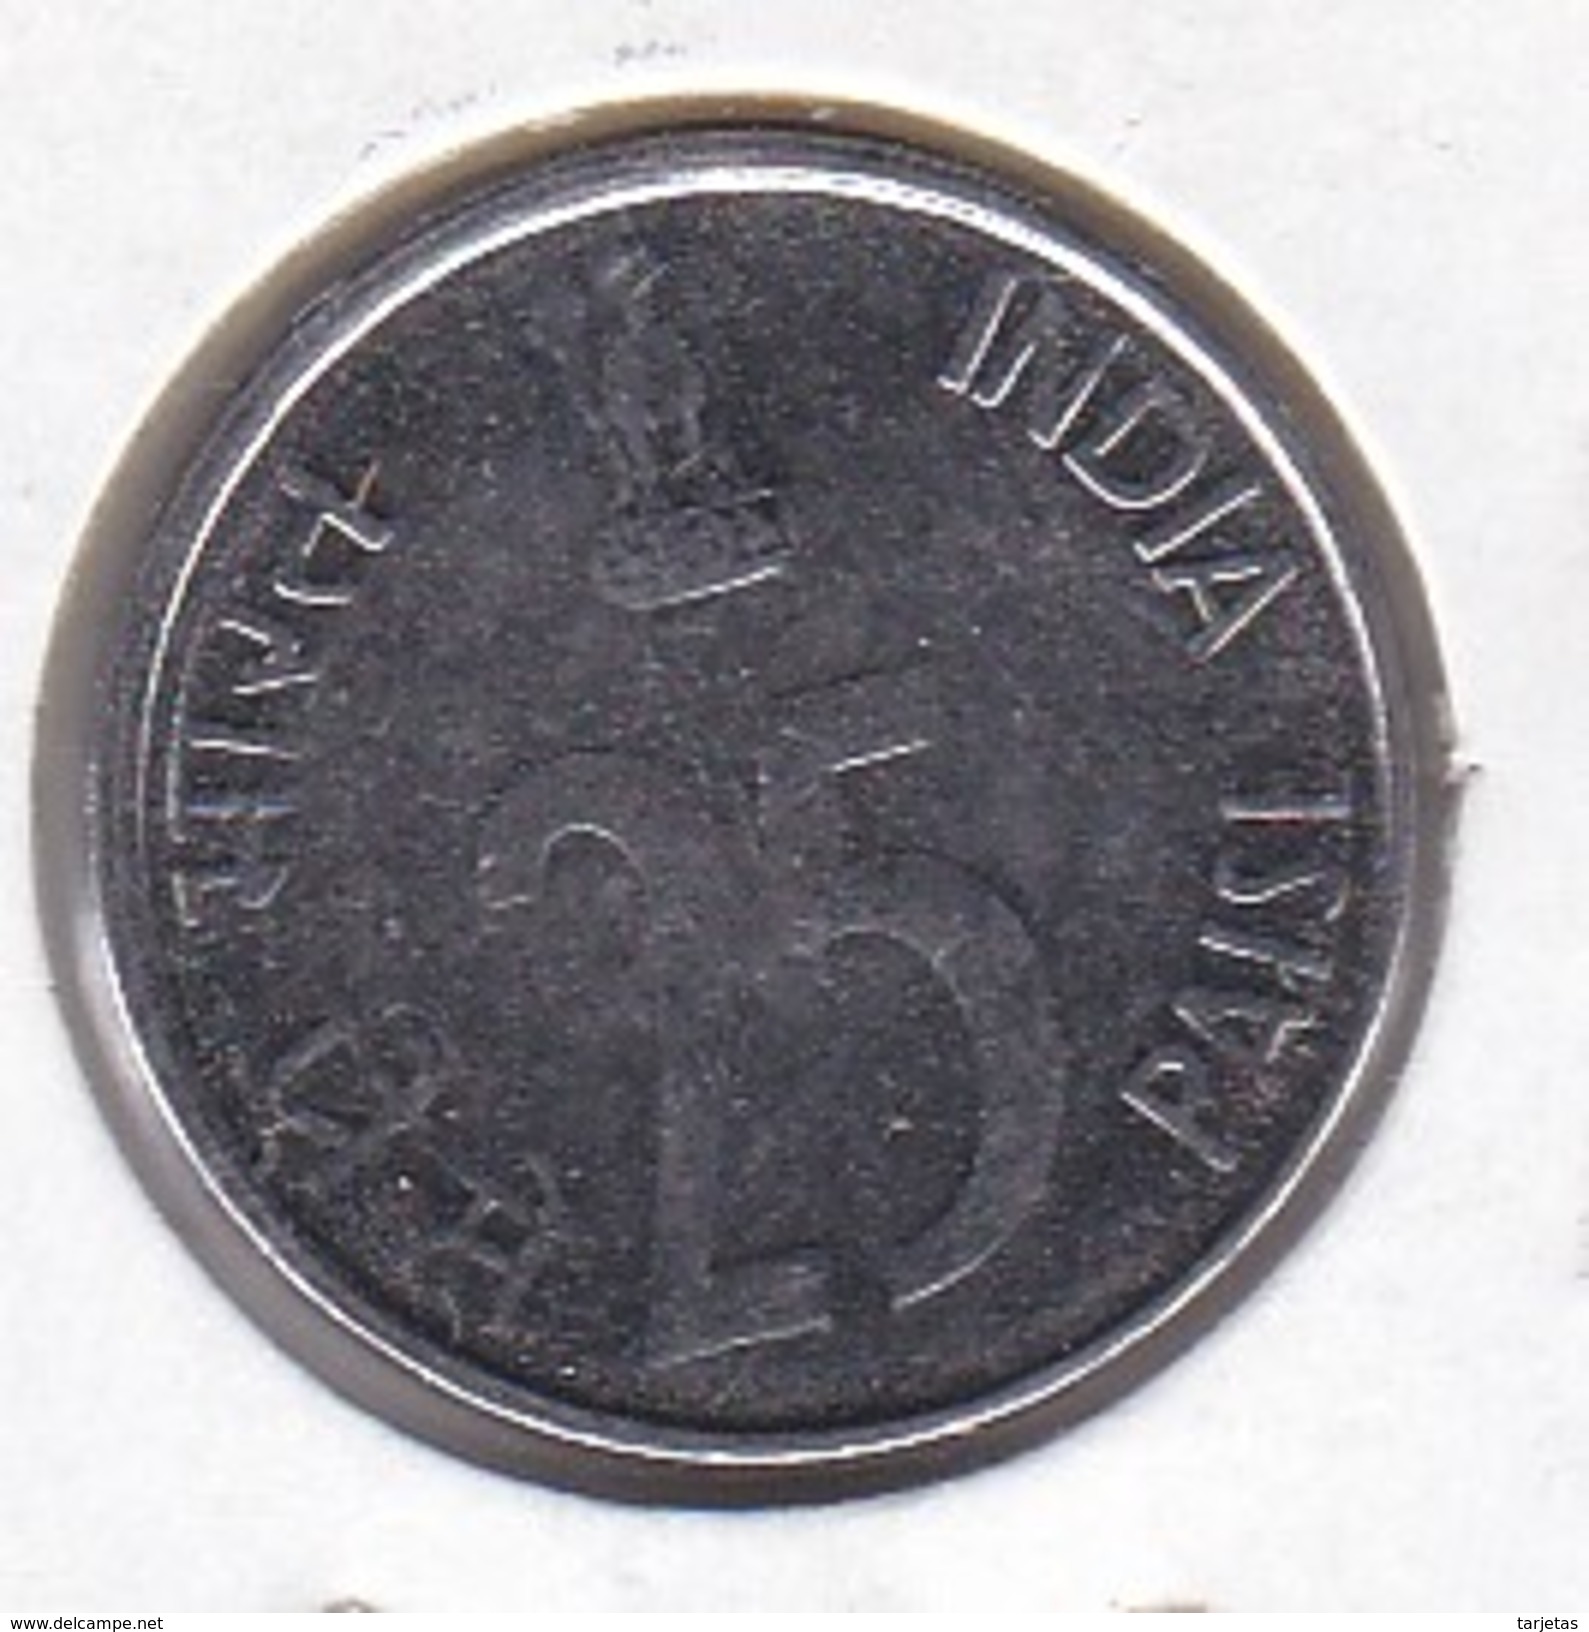 MONEDA DE LA INDIA DE 25 PAISE DEL AÑO 1999 CON UN RINOCERONTE (RHINO) (COIN) SIN CIRCULAR-UNCIRCULATED - India